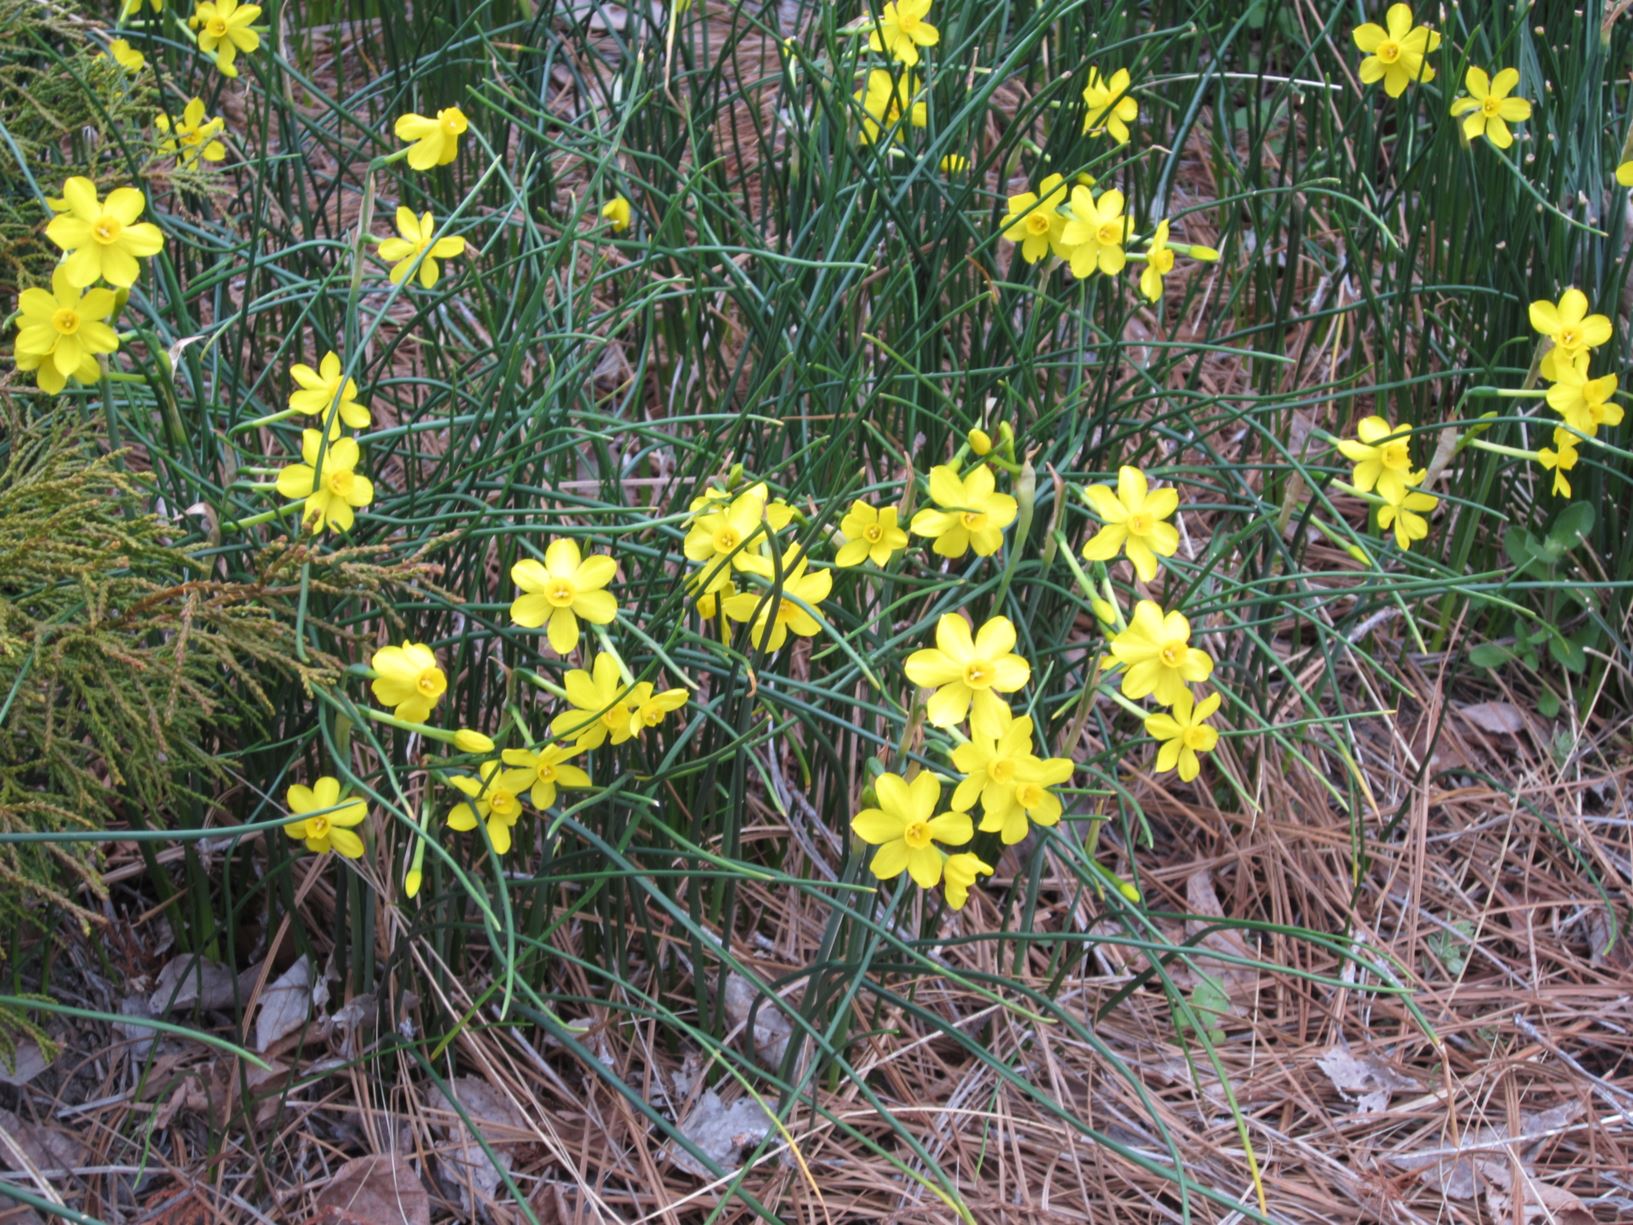 Narcissus jonquilla - jonquil daffodil